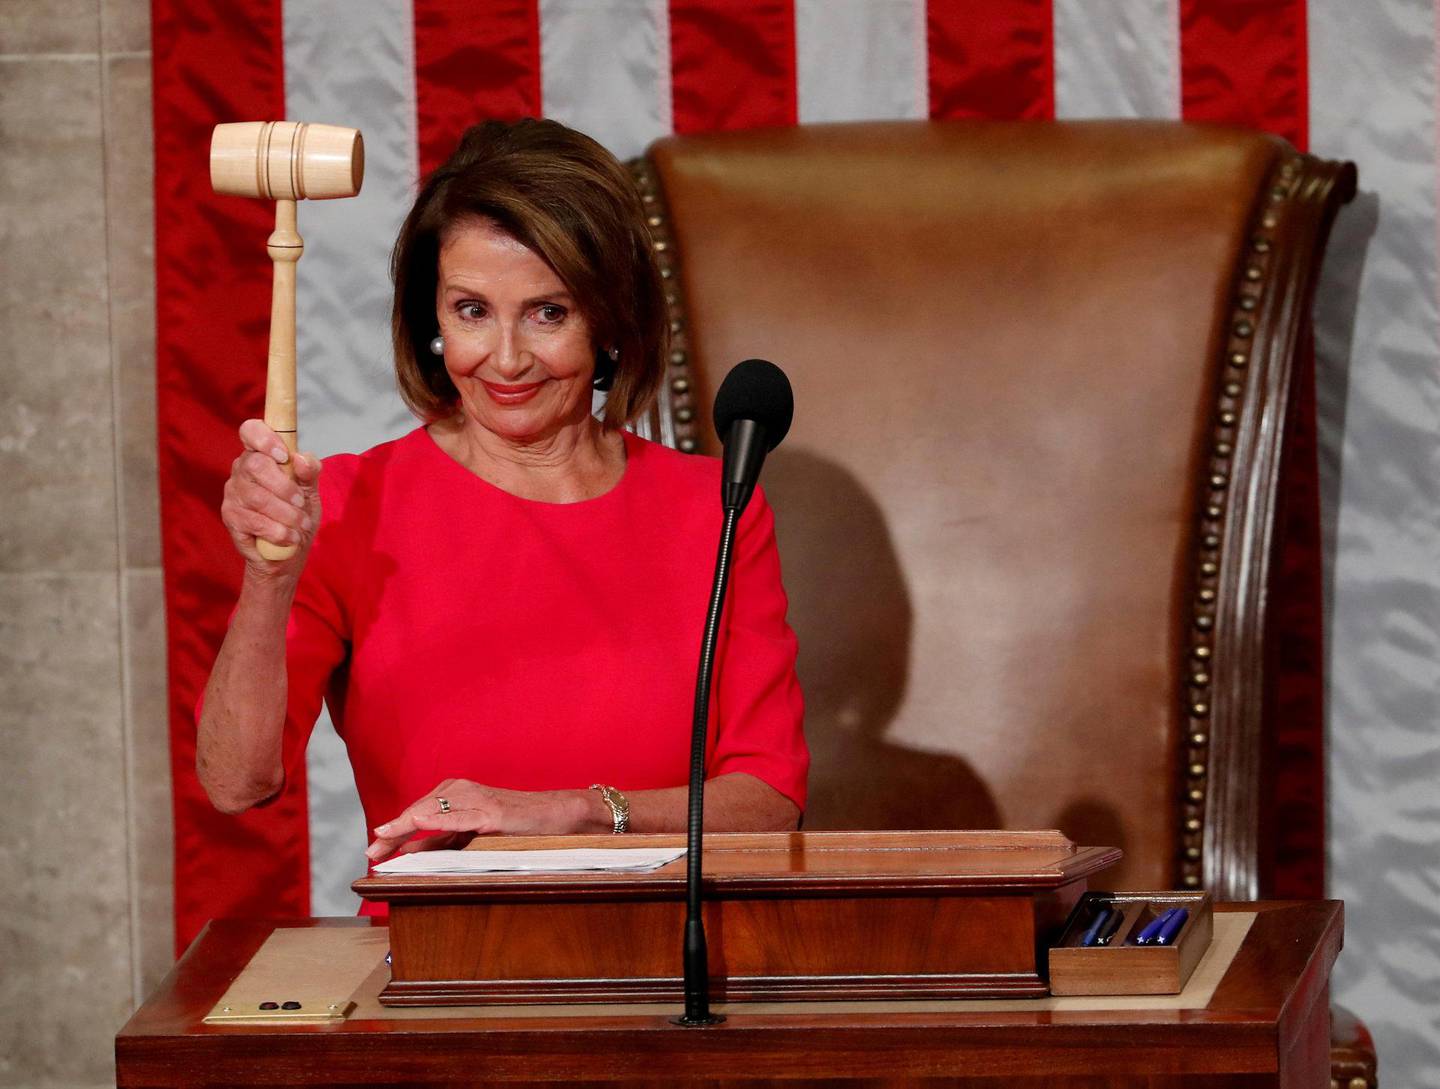 MEKTIG: Nancy Pelosi (78) inntok nettopp posisjonen som speaker i Representantene hus. FOTO: NTB SCANPIX